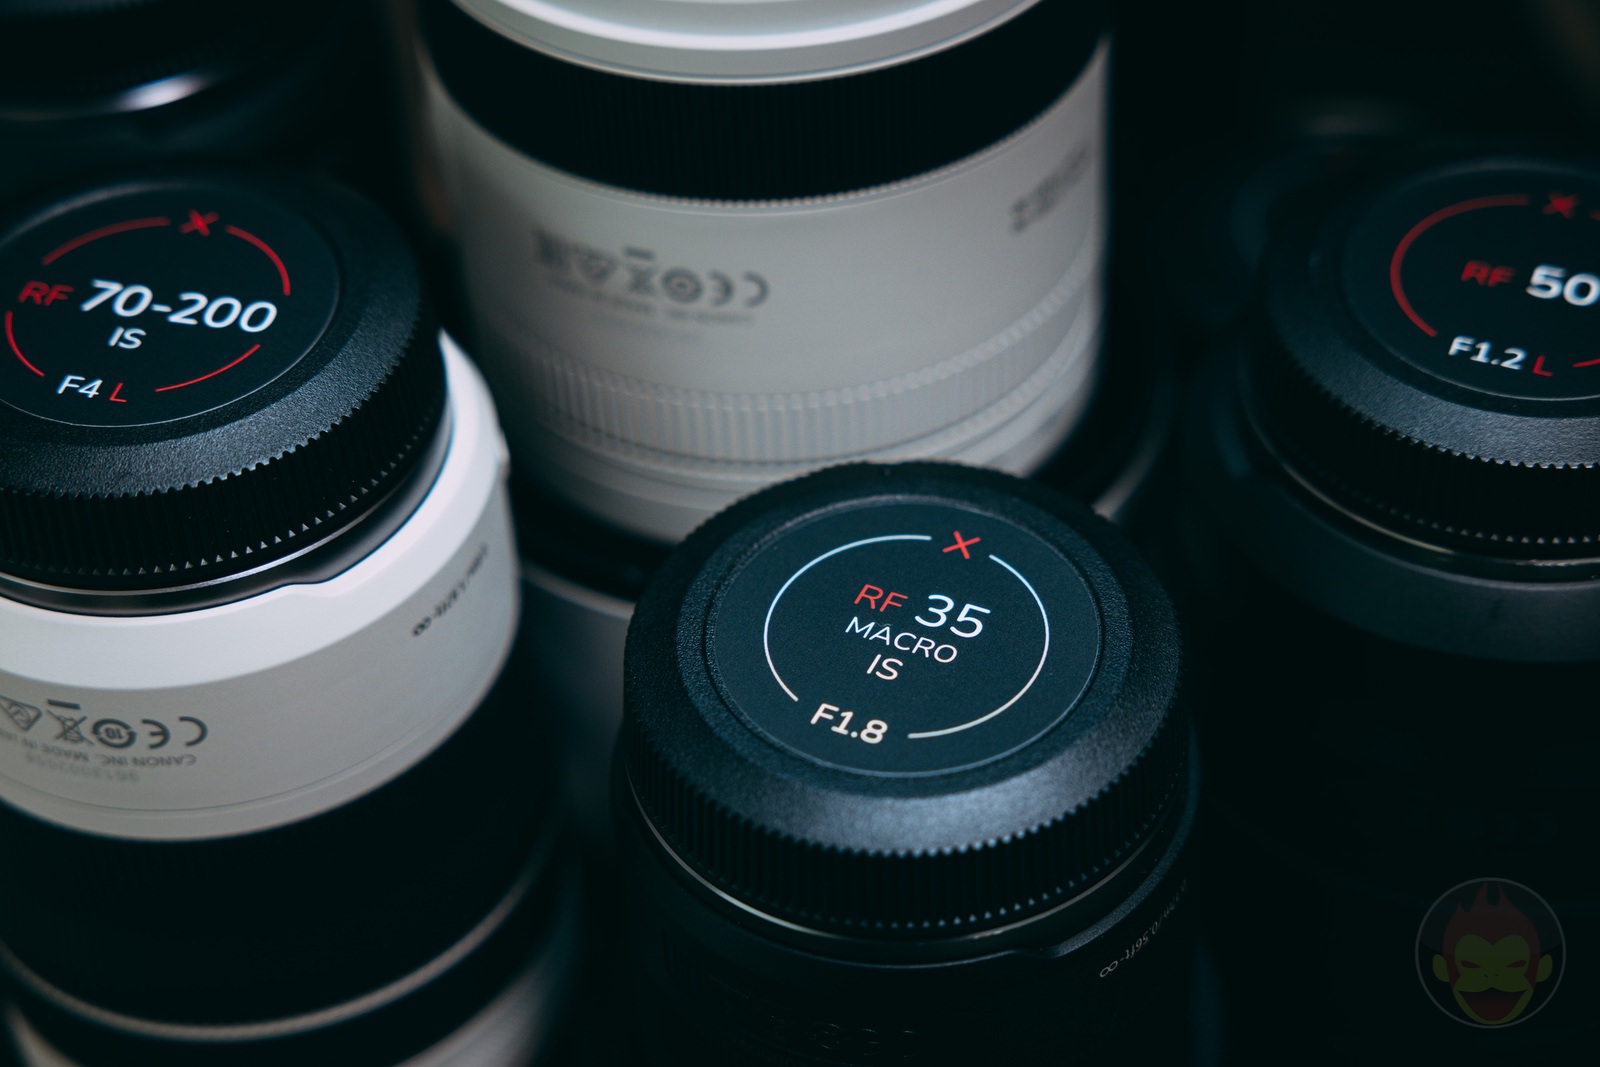 Field-Made-Co-Lens-Sticker-Pack-for-RF-Lens-Review-06.jpg